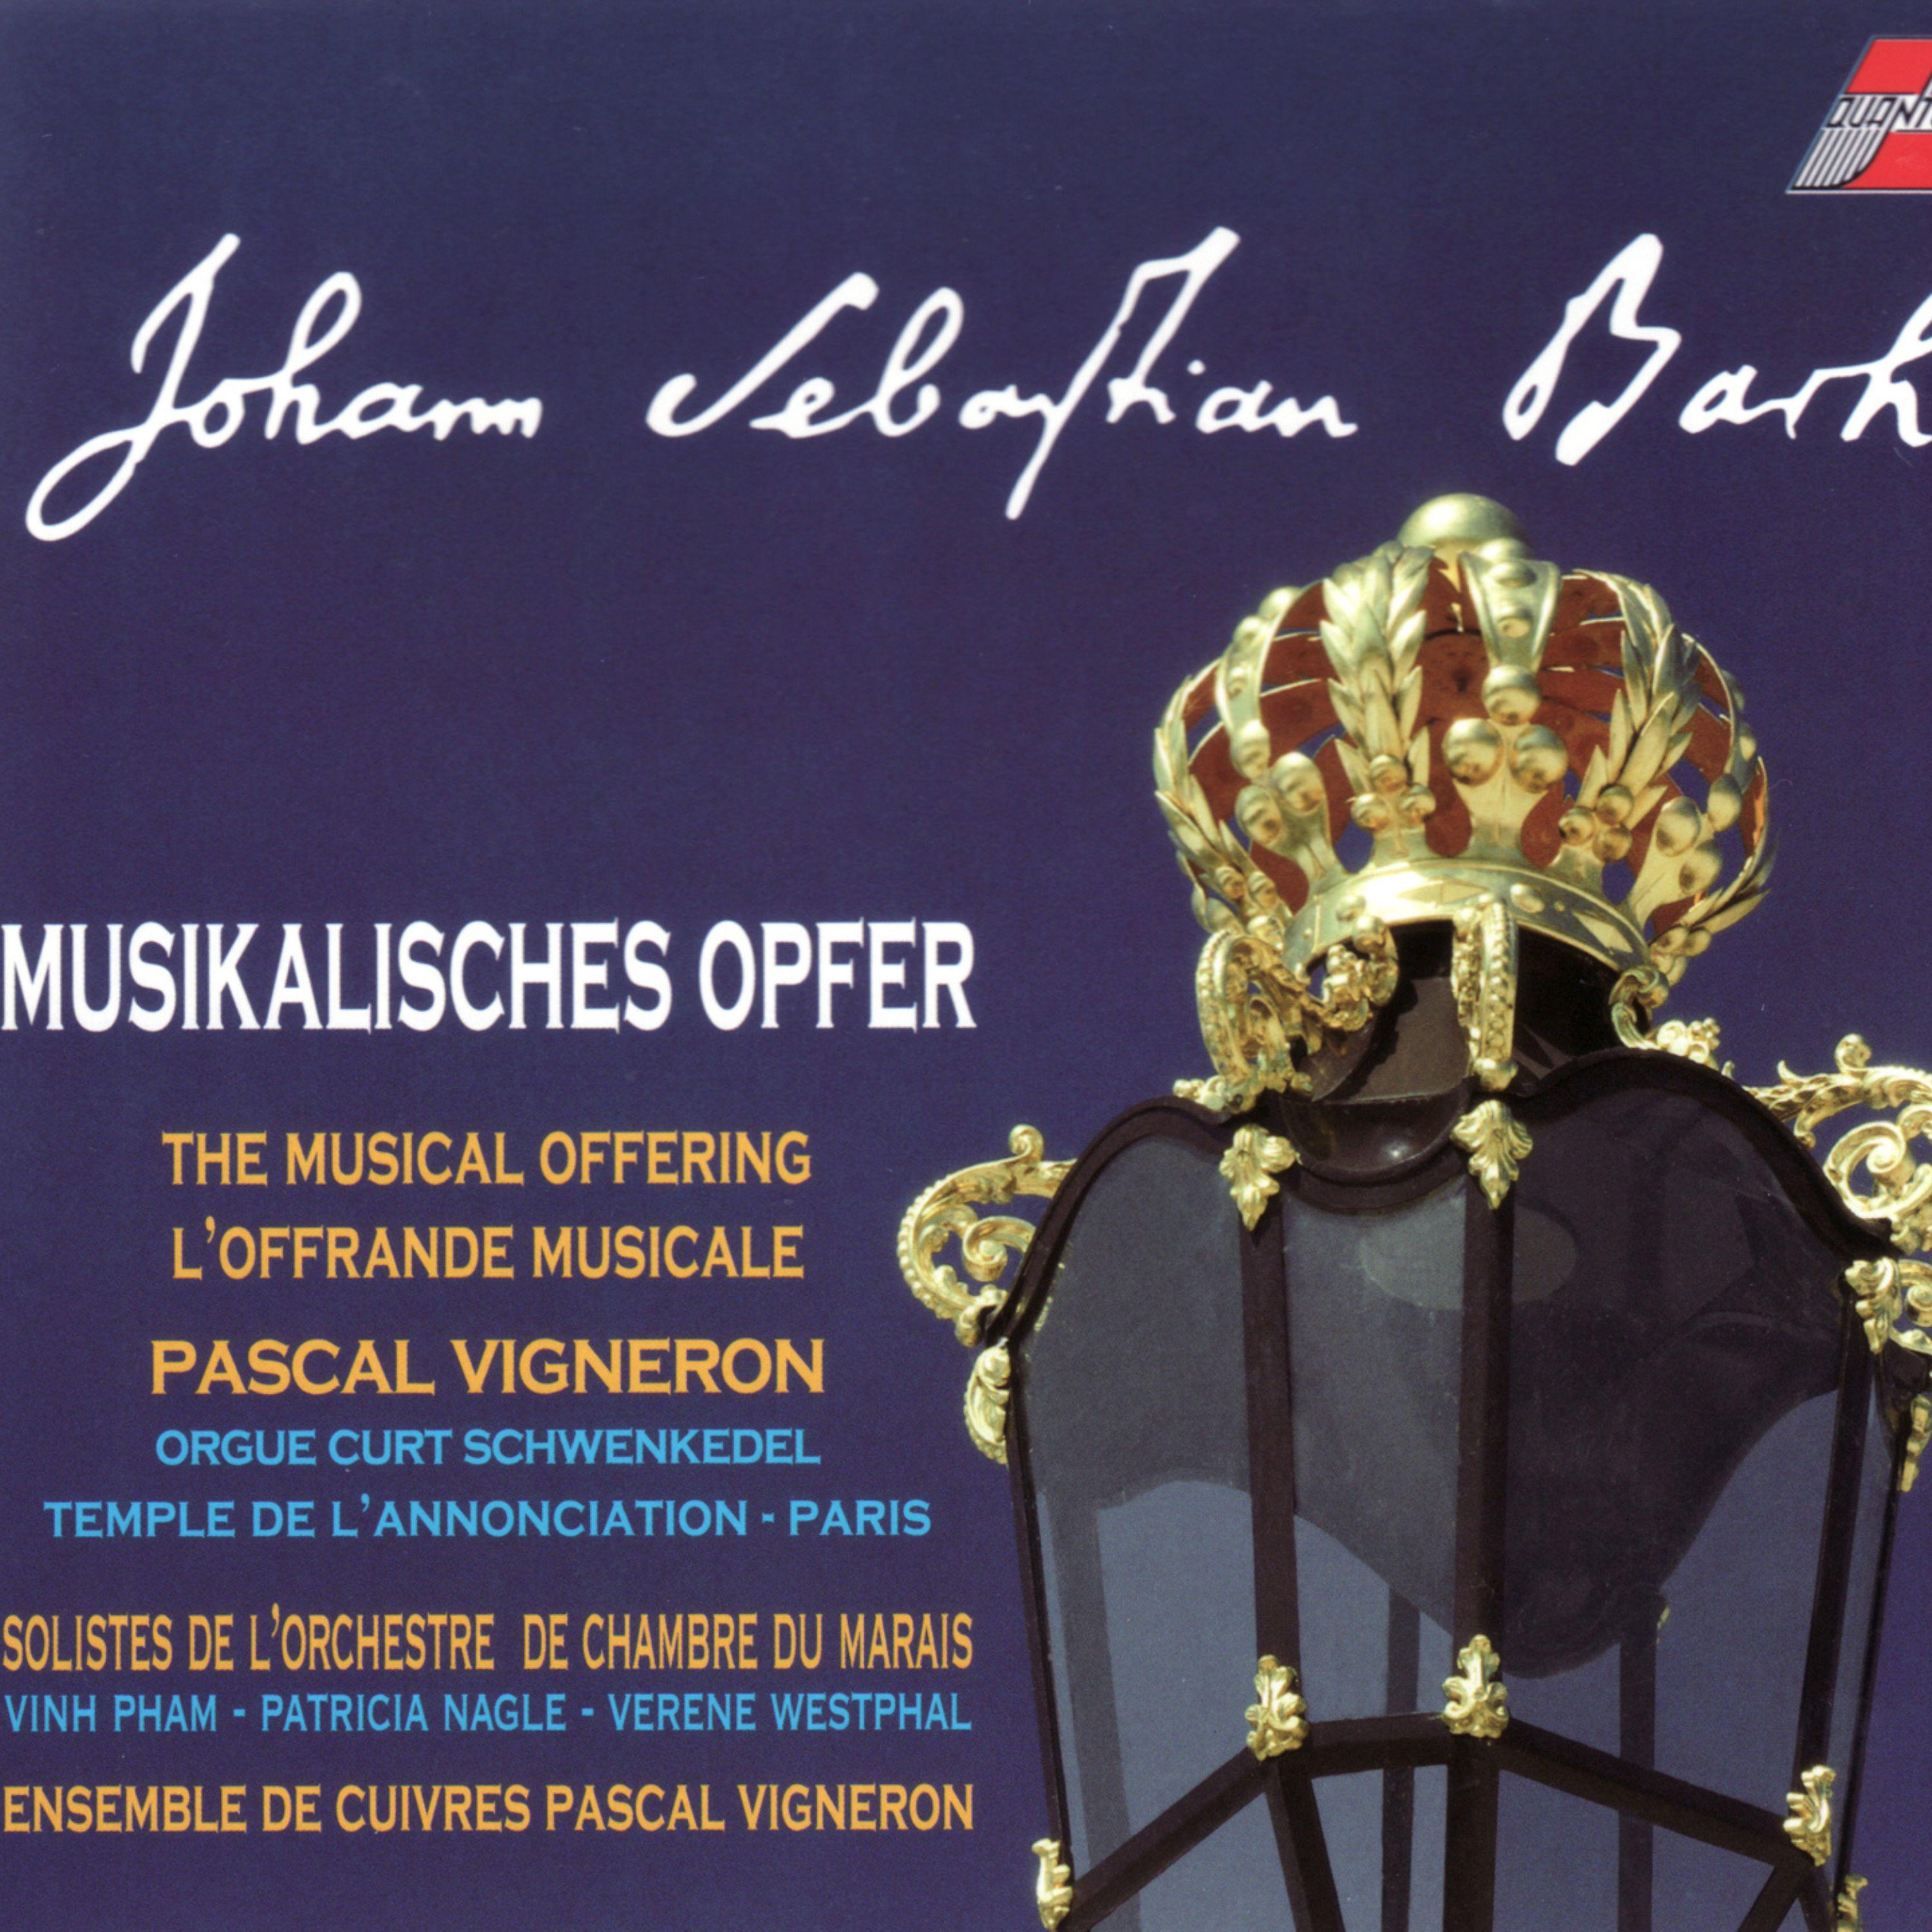 Постер альбома Bach: L'offrande musicale, BWV 1079